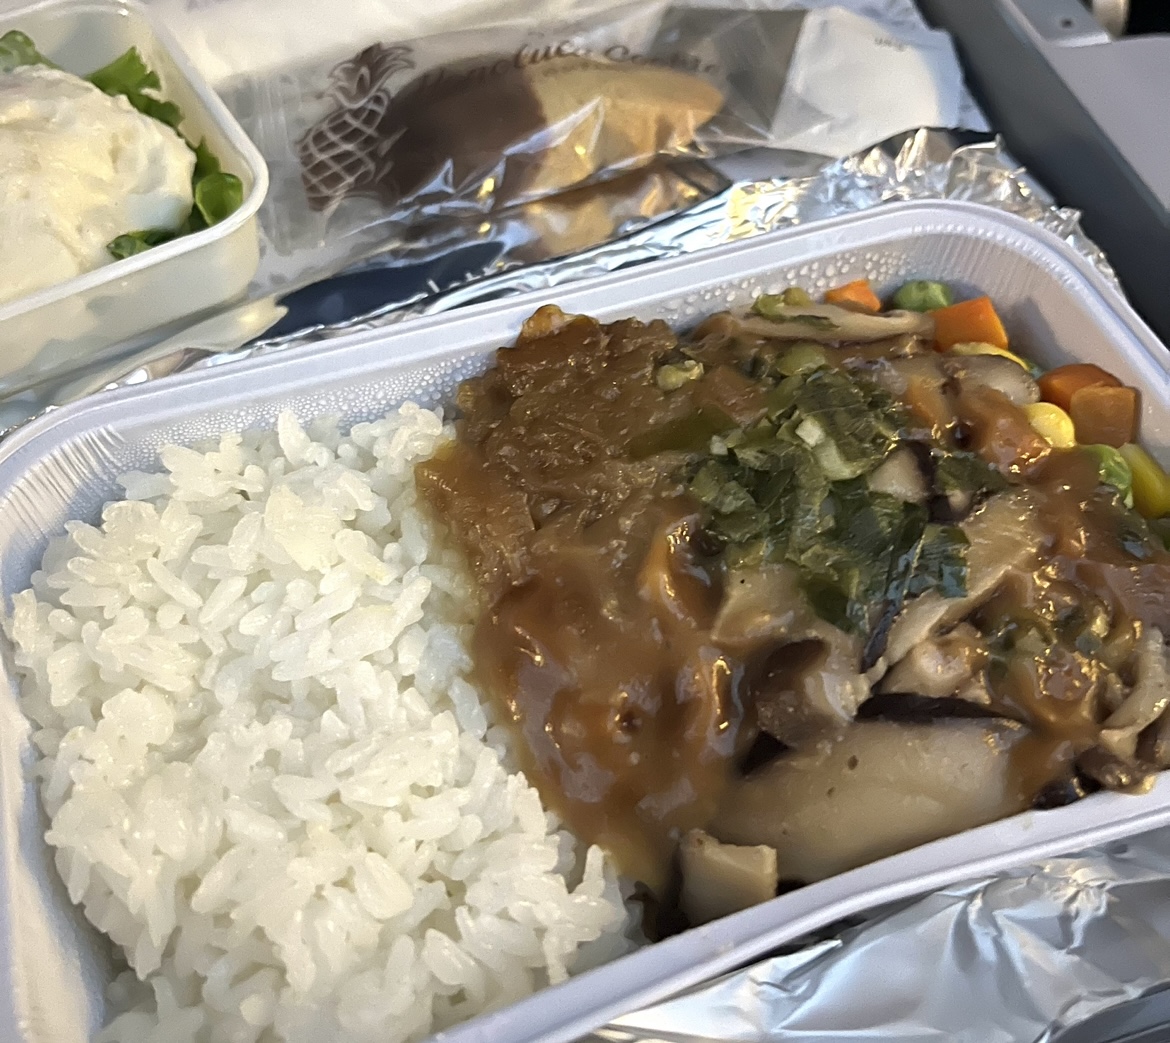 ハワイアン航空 福岡 ホノルル 機内食について